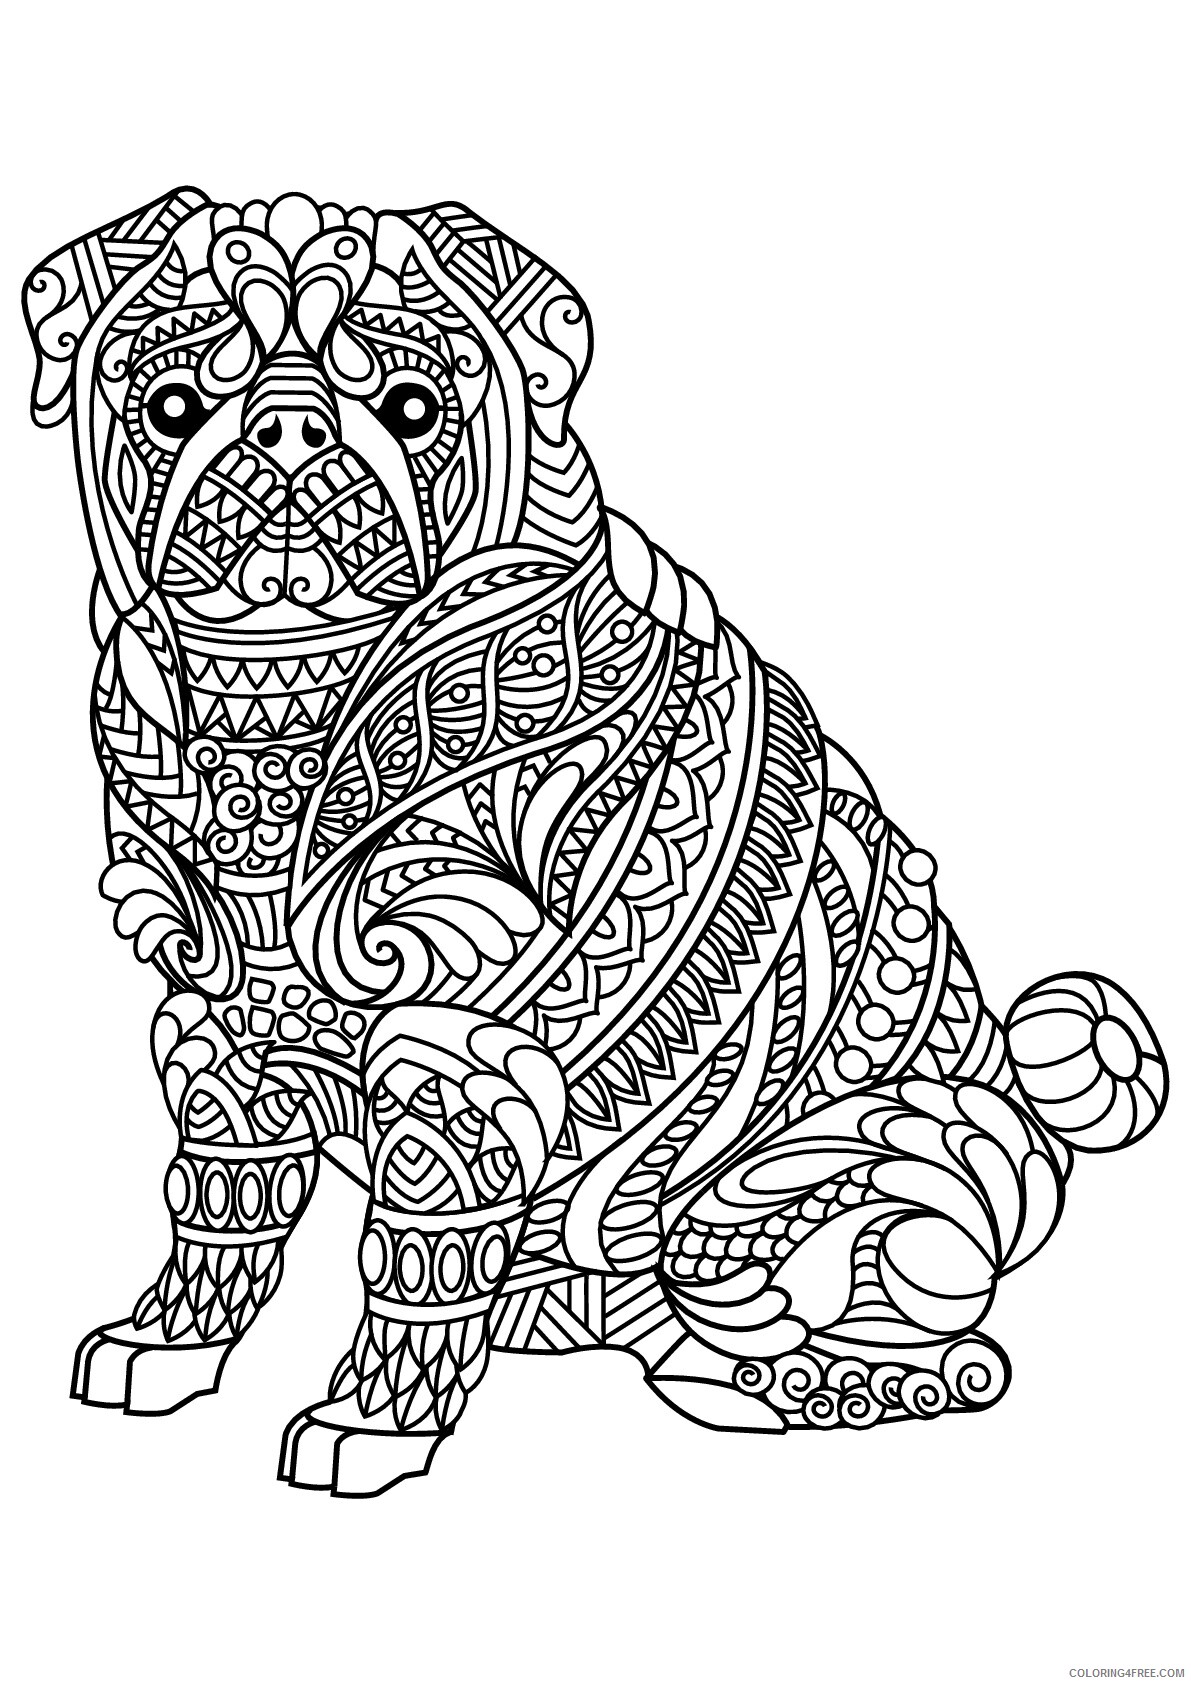 Bulldog Coloring Pages Animal Printable Sheets Zen Bulldog 2021 0630 Coloring4free